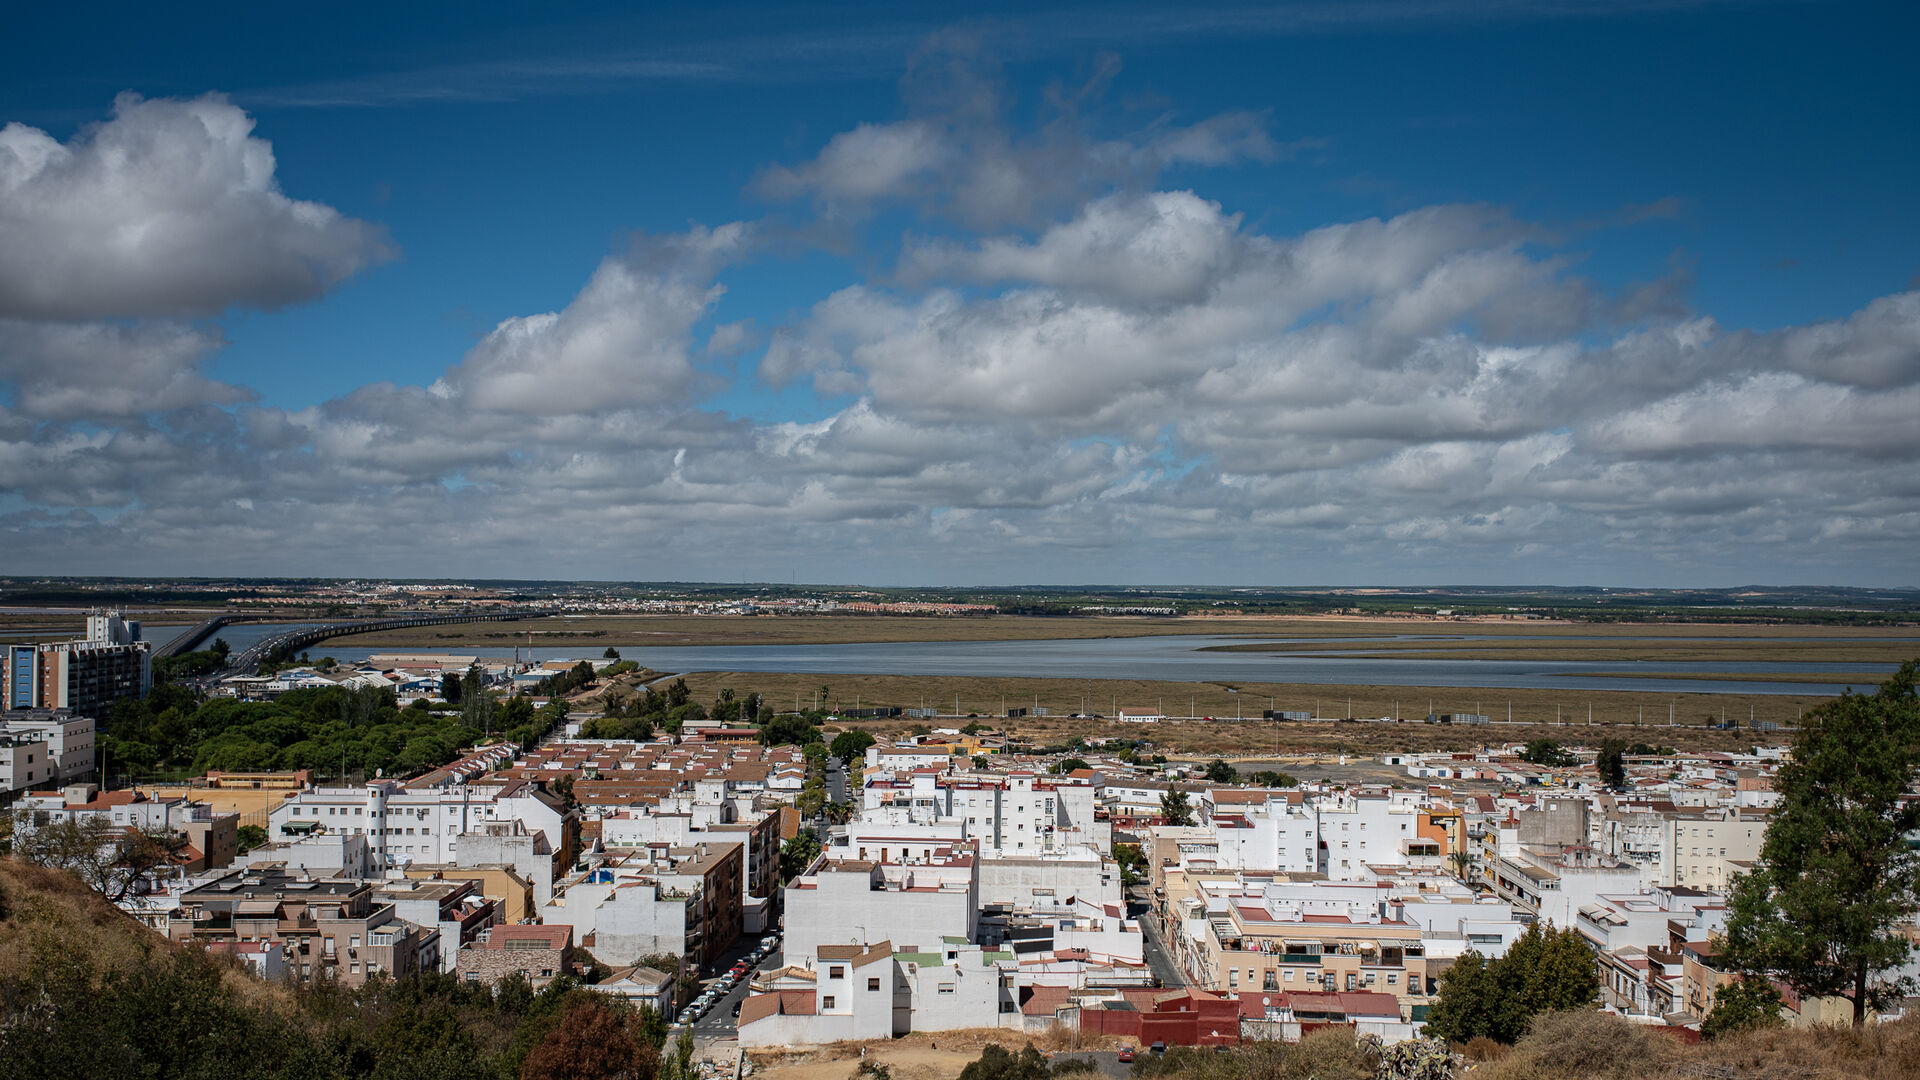 Los rincones de Huelva se llenan de vida en septiembre